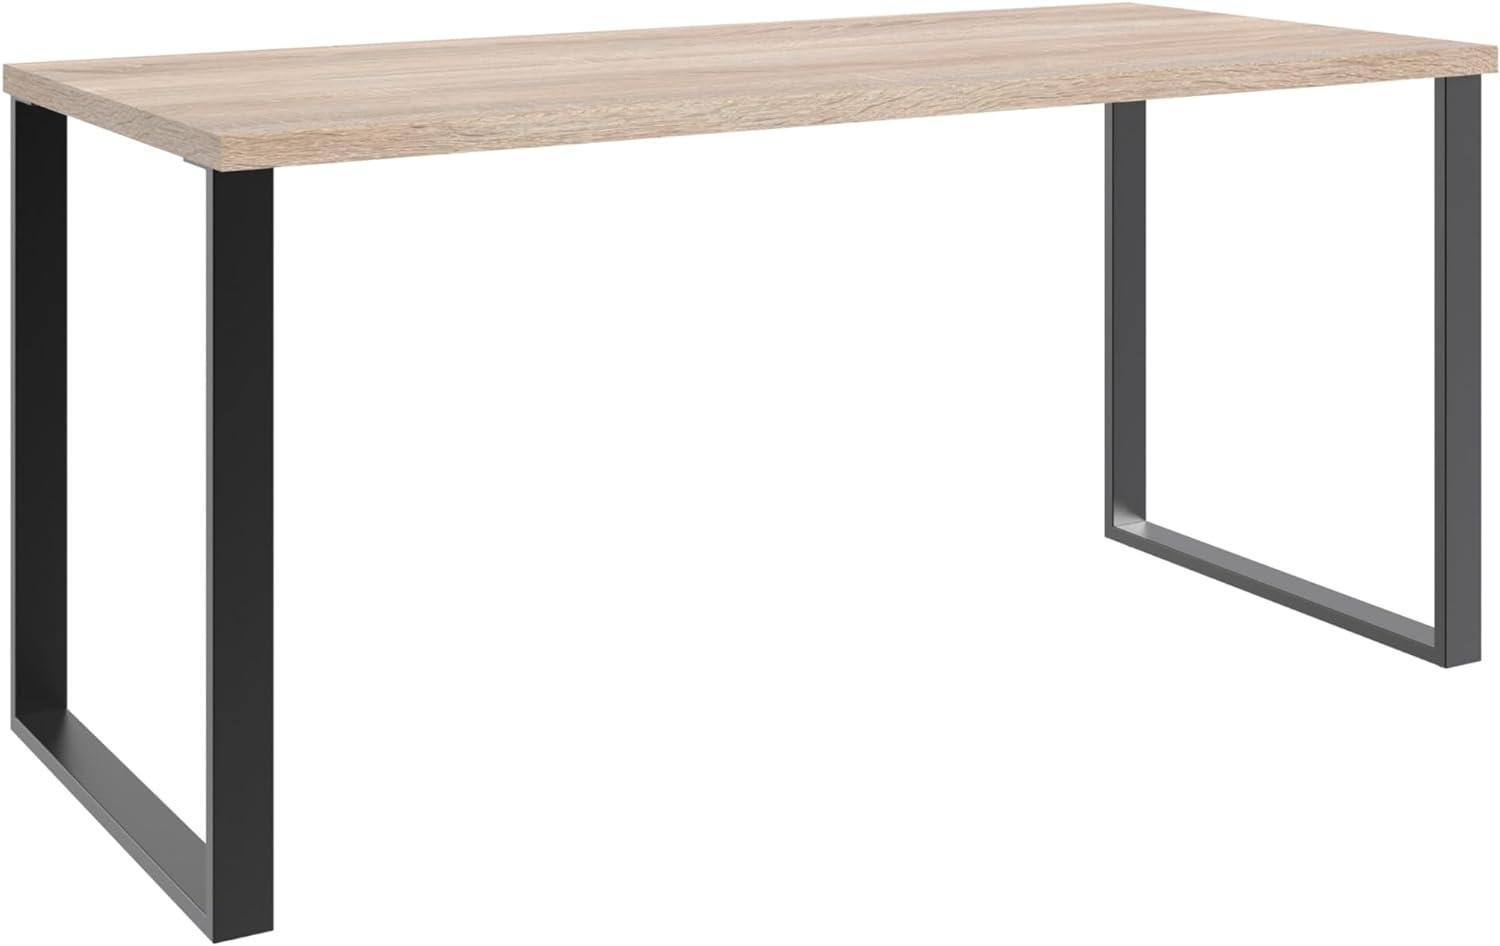 Schreibtisch >HOME DESK< in Eiche Sägerau Nachbildung - 159x75x70cm (BxHxT) Bild 1